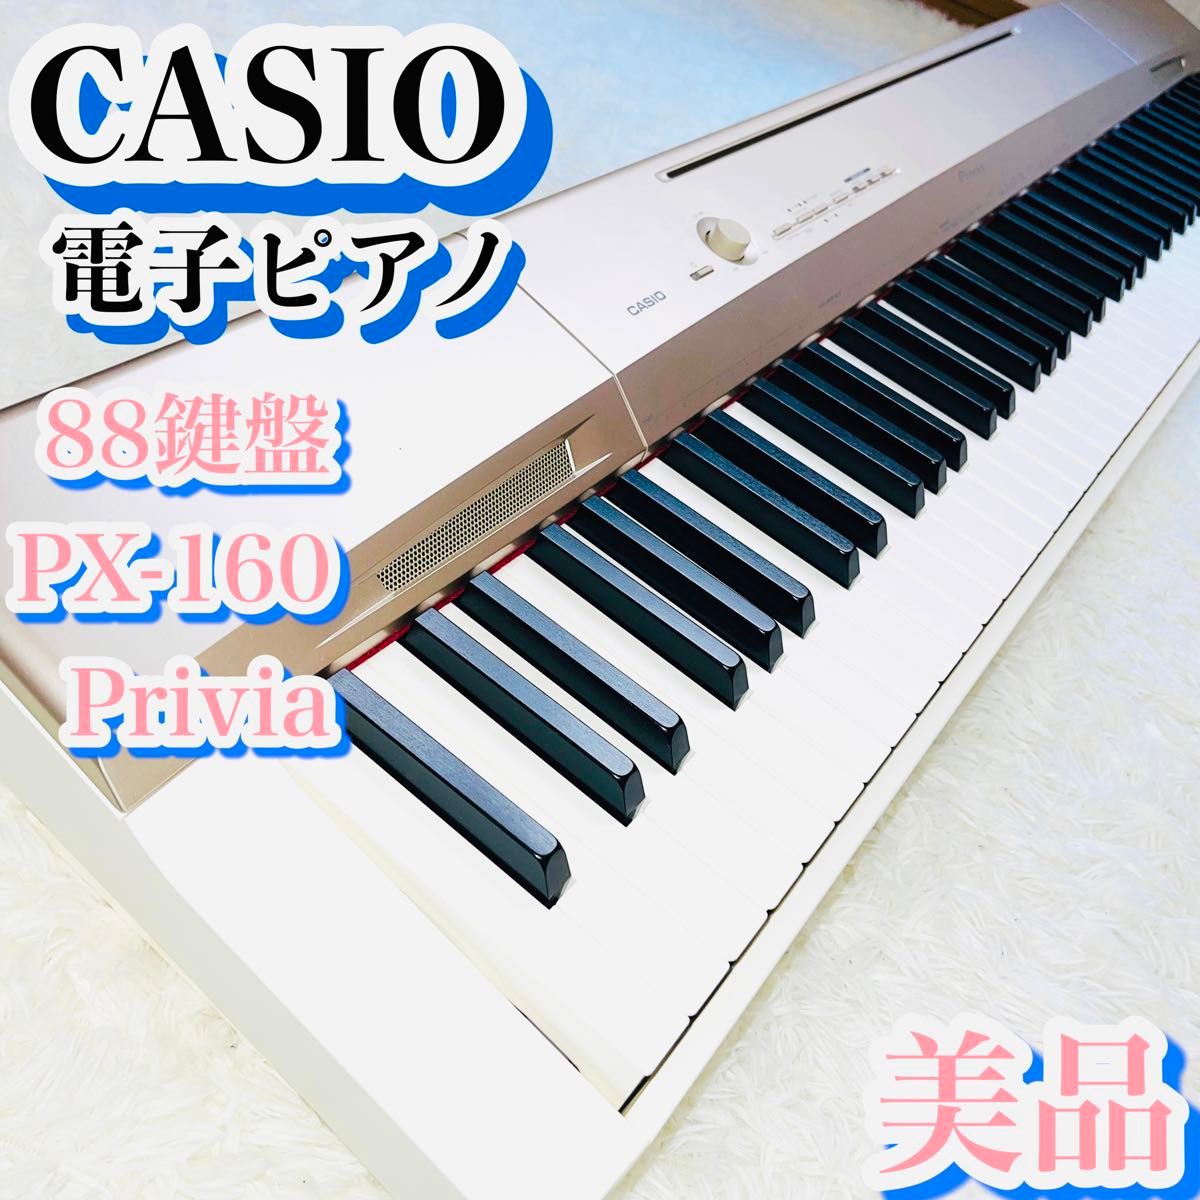 美品 Privia PX-160GD シャンパンゴールド 88鍵盤 MIDI対応｜Yahoo 